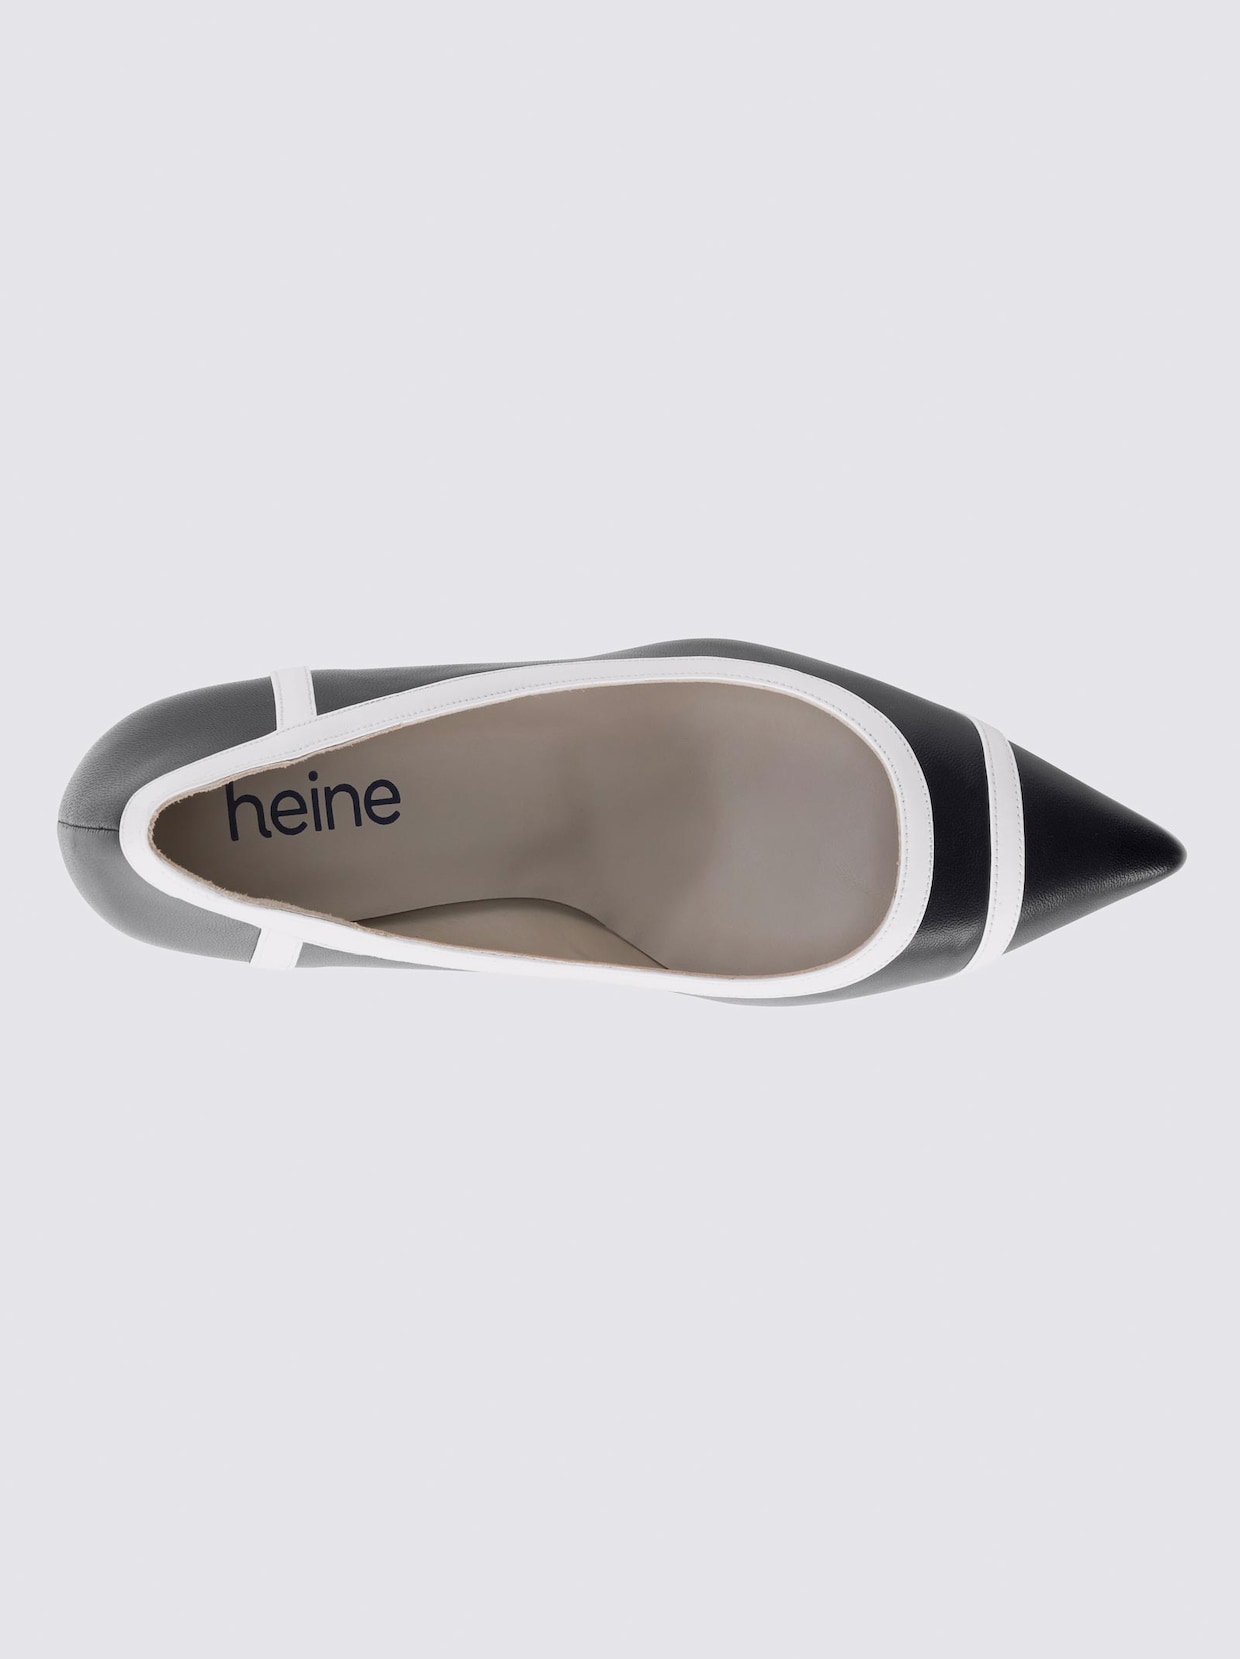 heine pumps - zwart/wit